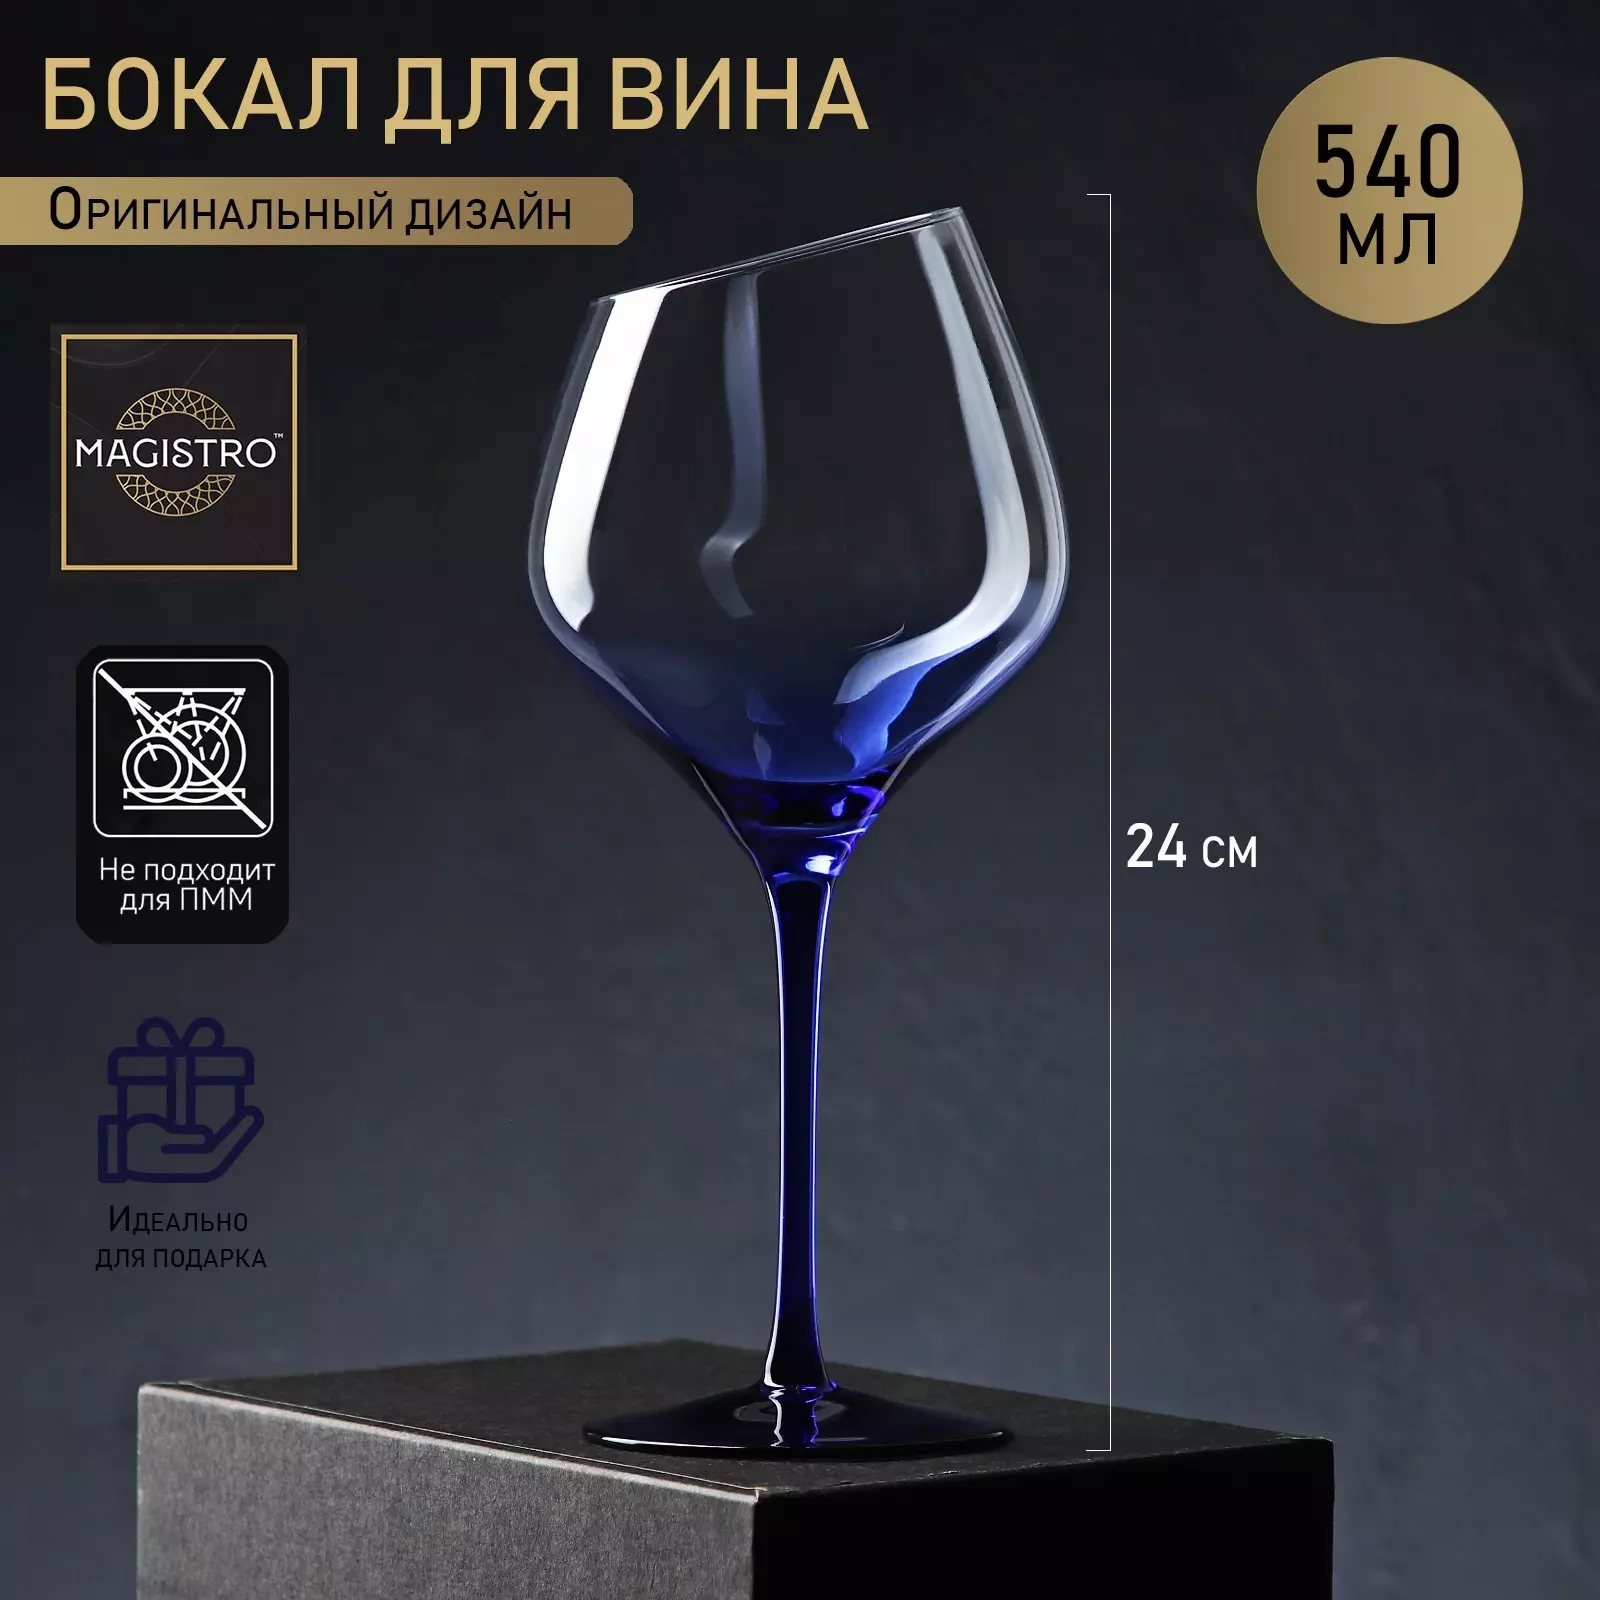 Бокал для вина 540 мл, 10×24 см, Magistro Иллюзия, цвет ножки синий, стеклянный